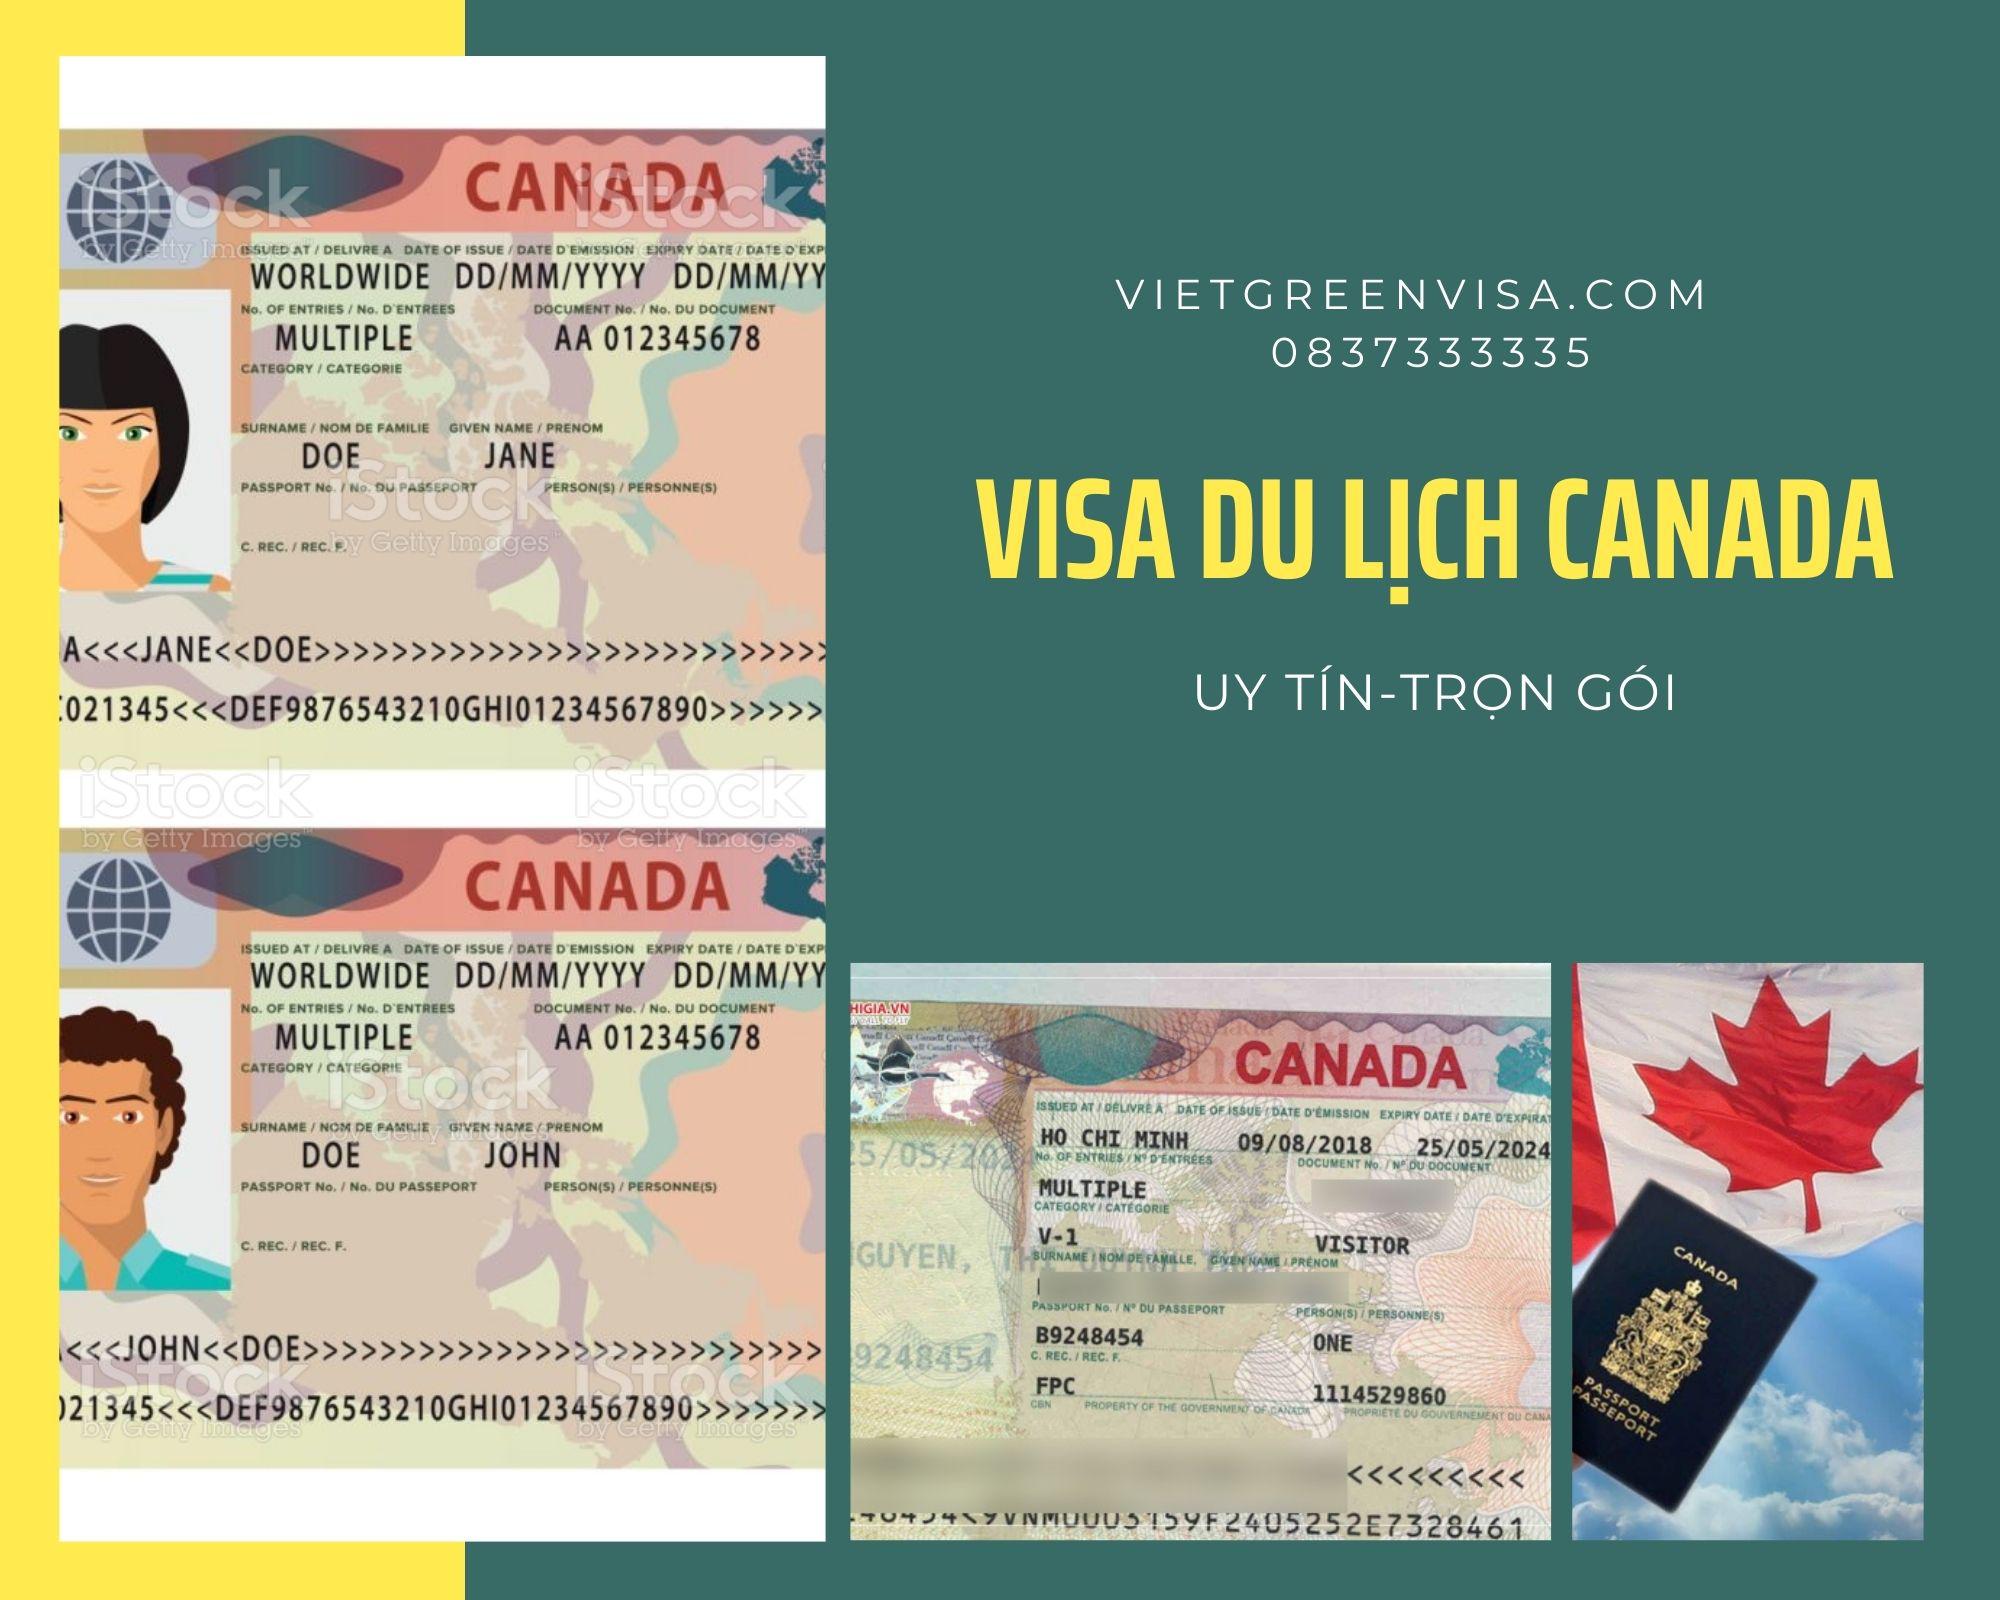 Xin Visa du lịch Canada uy tín, trọn gói, chất lượng